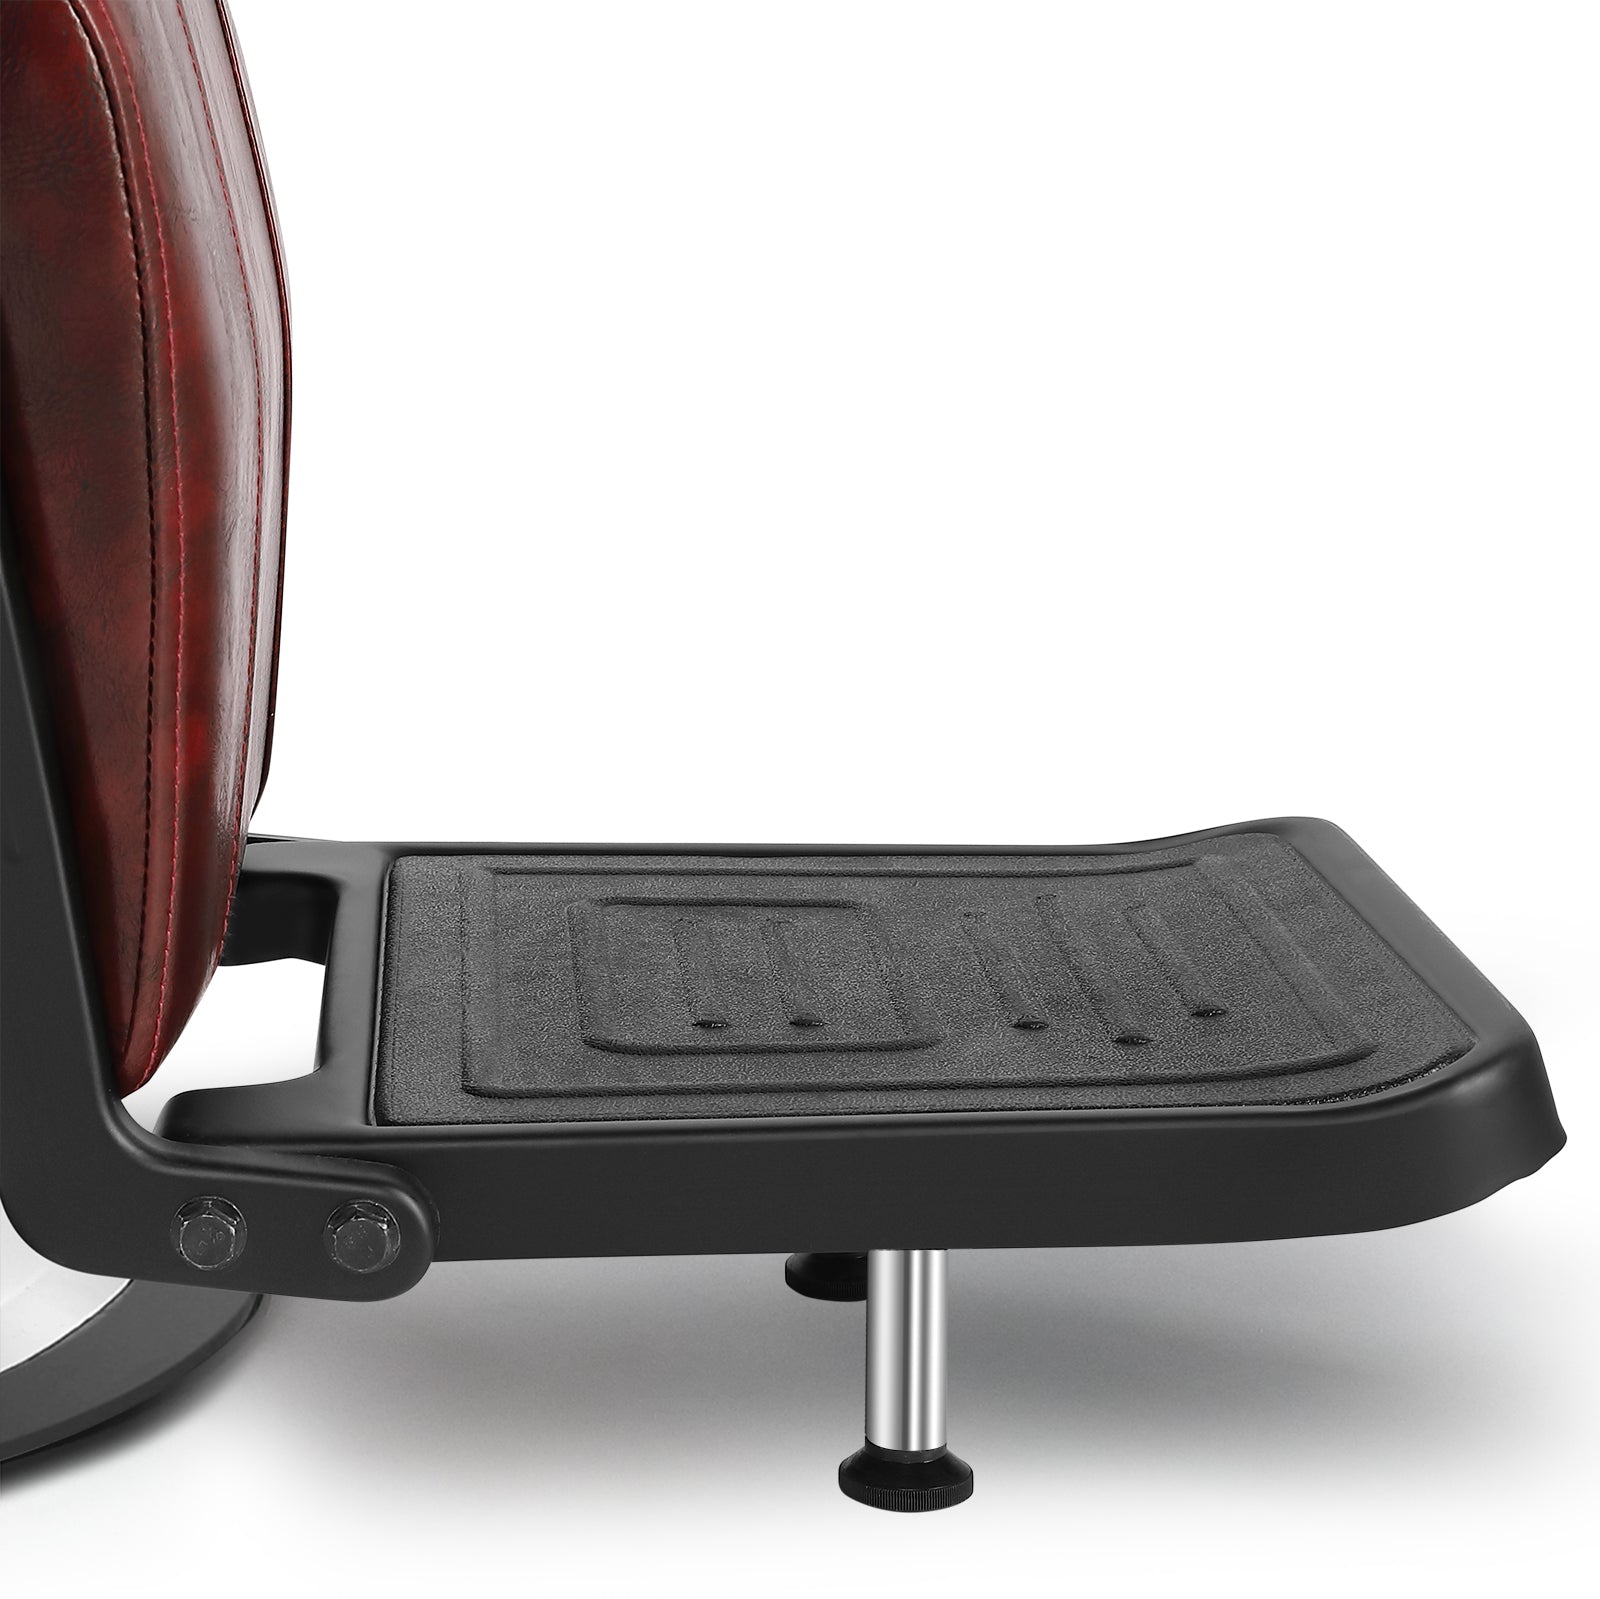 #5001 Hydraulic Reclining Heavy Duty Barber Chair Red